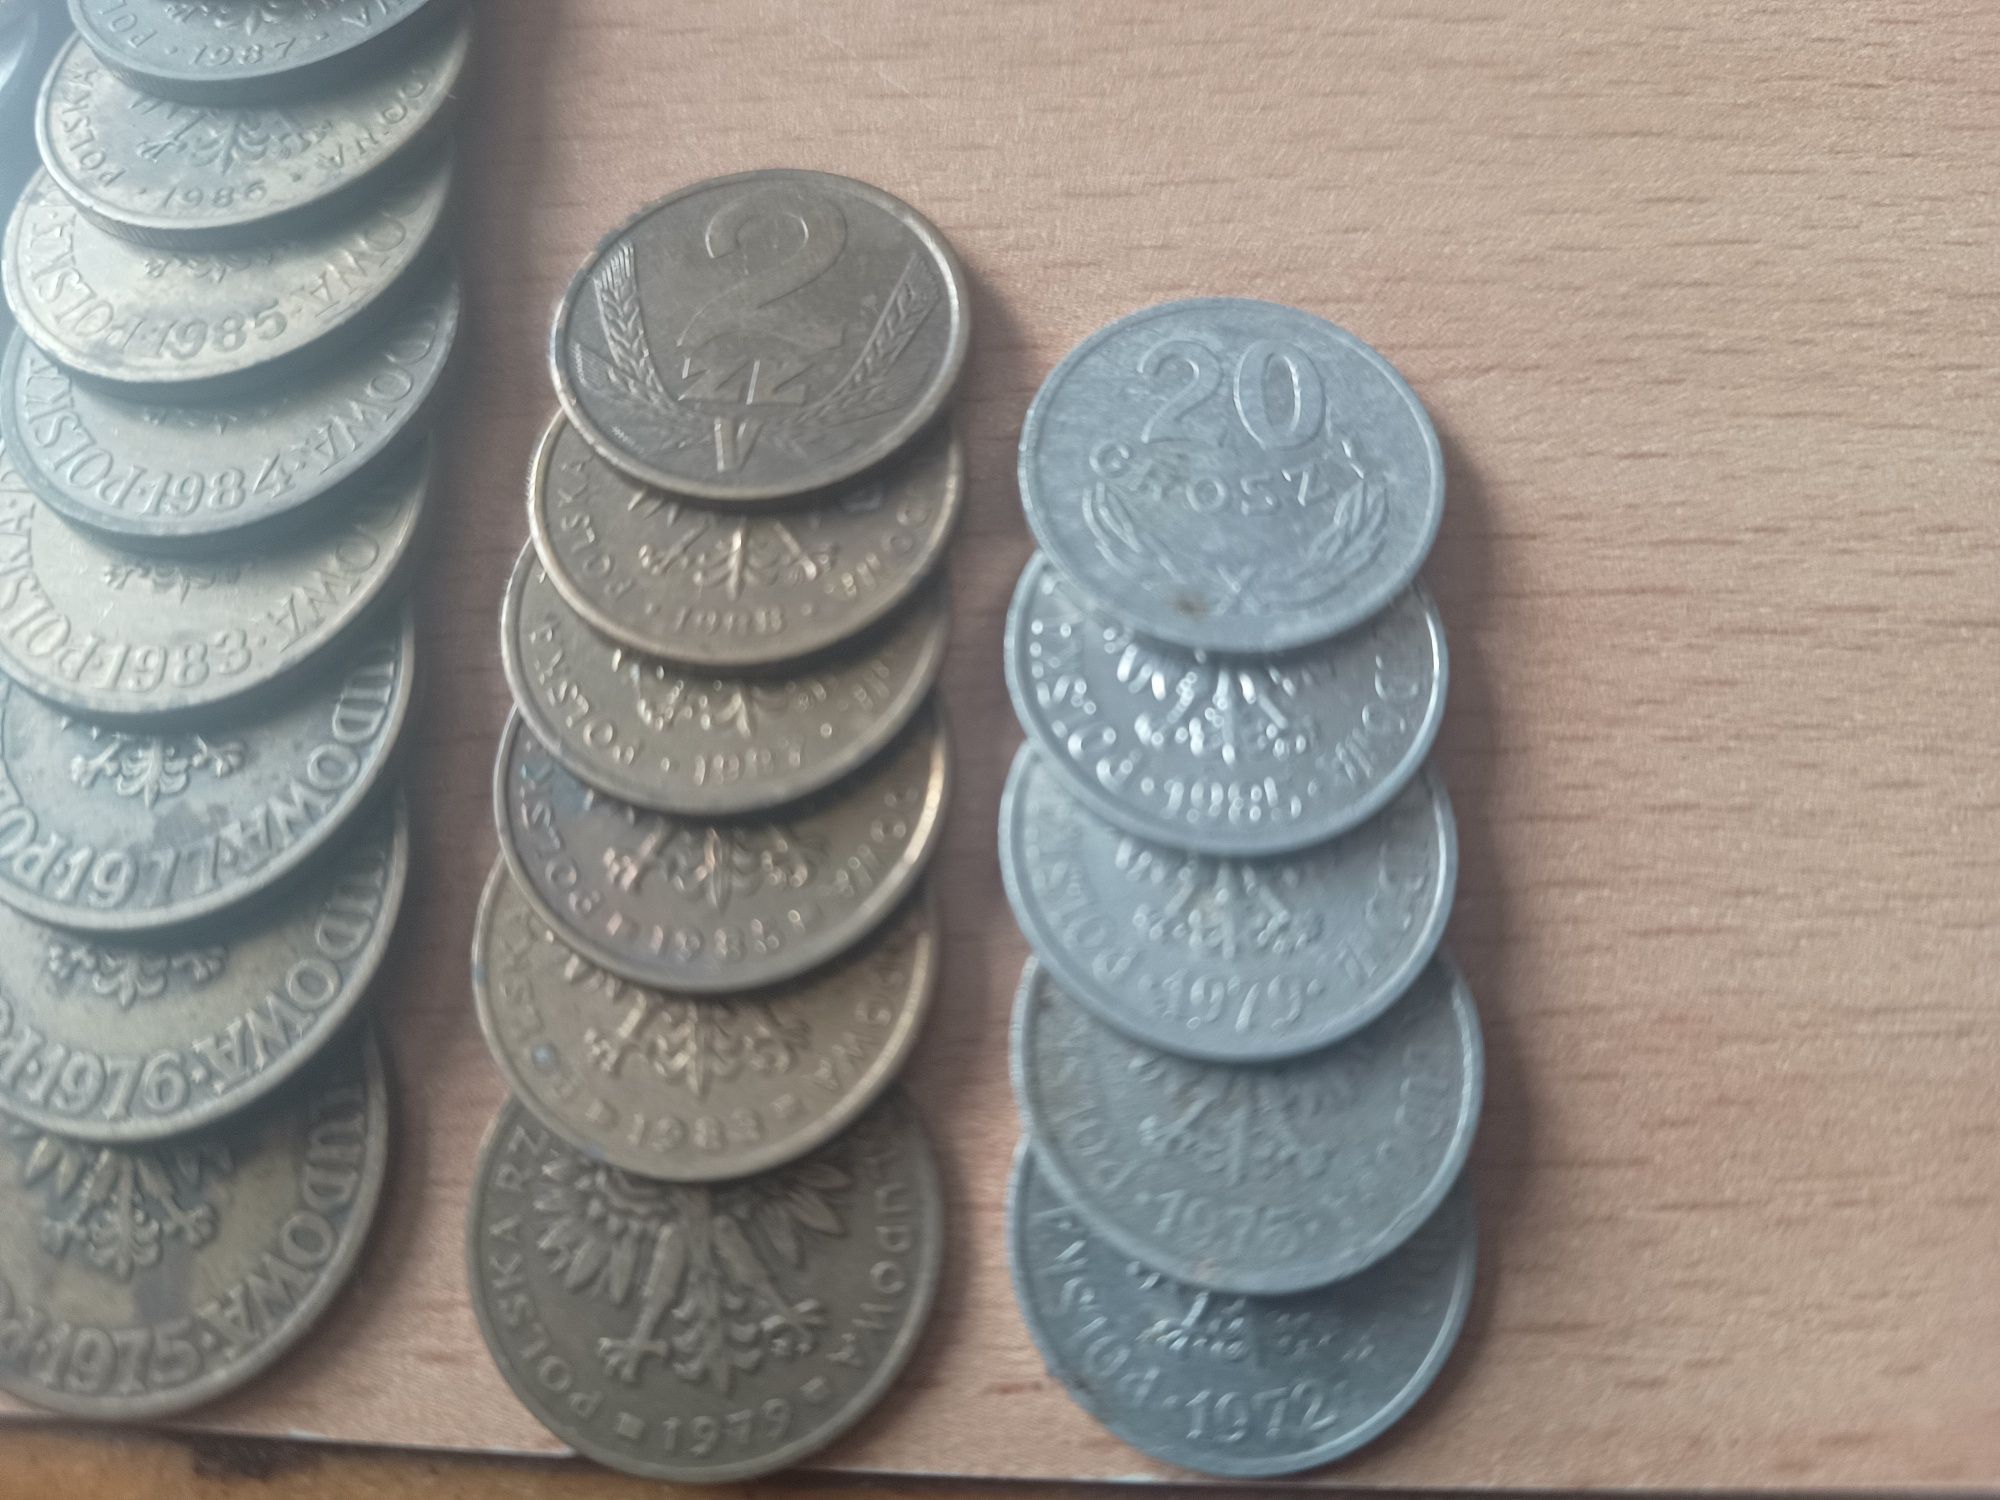 Sprzedam monety z PRL